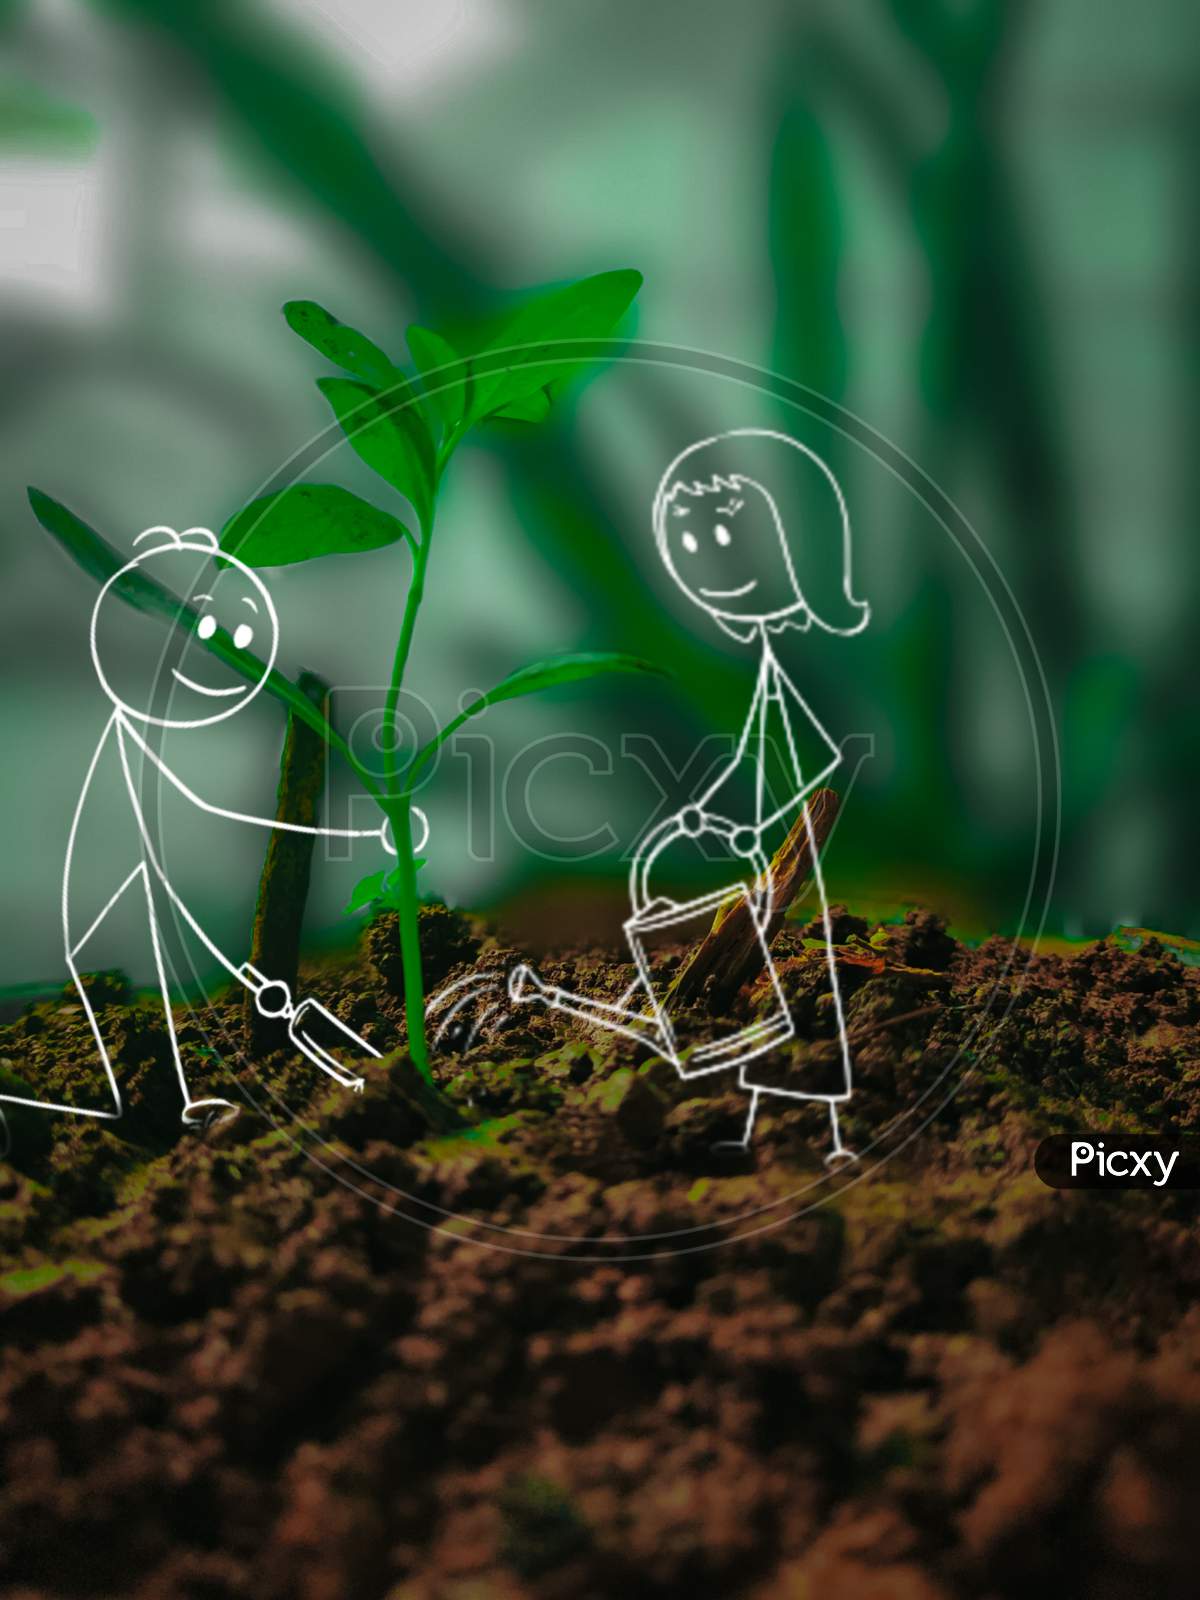 stickmans planting a plant